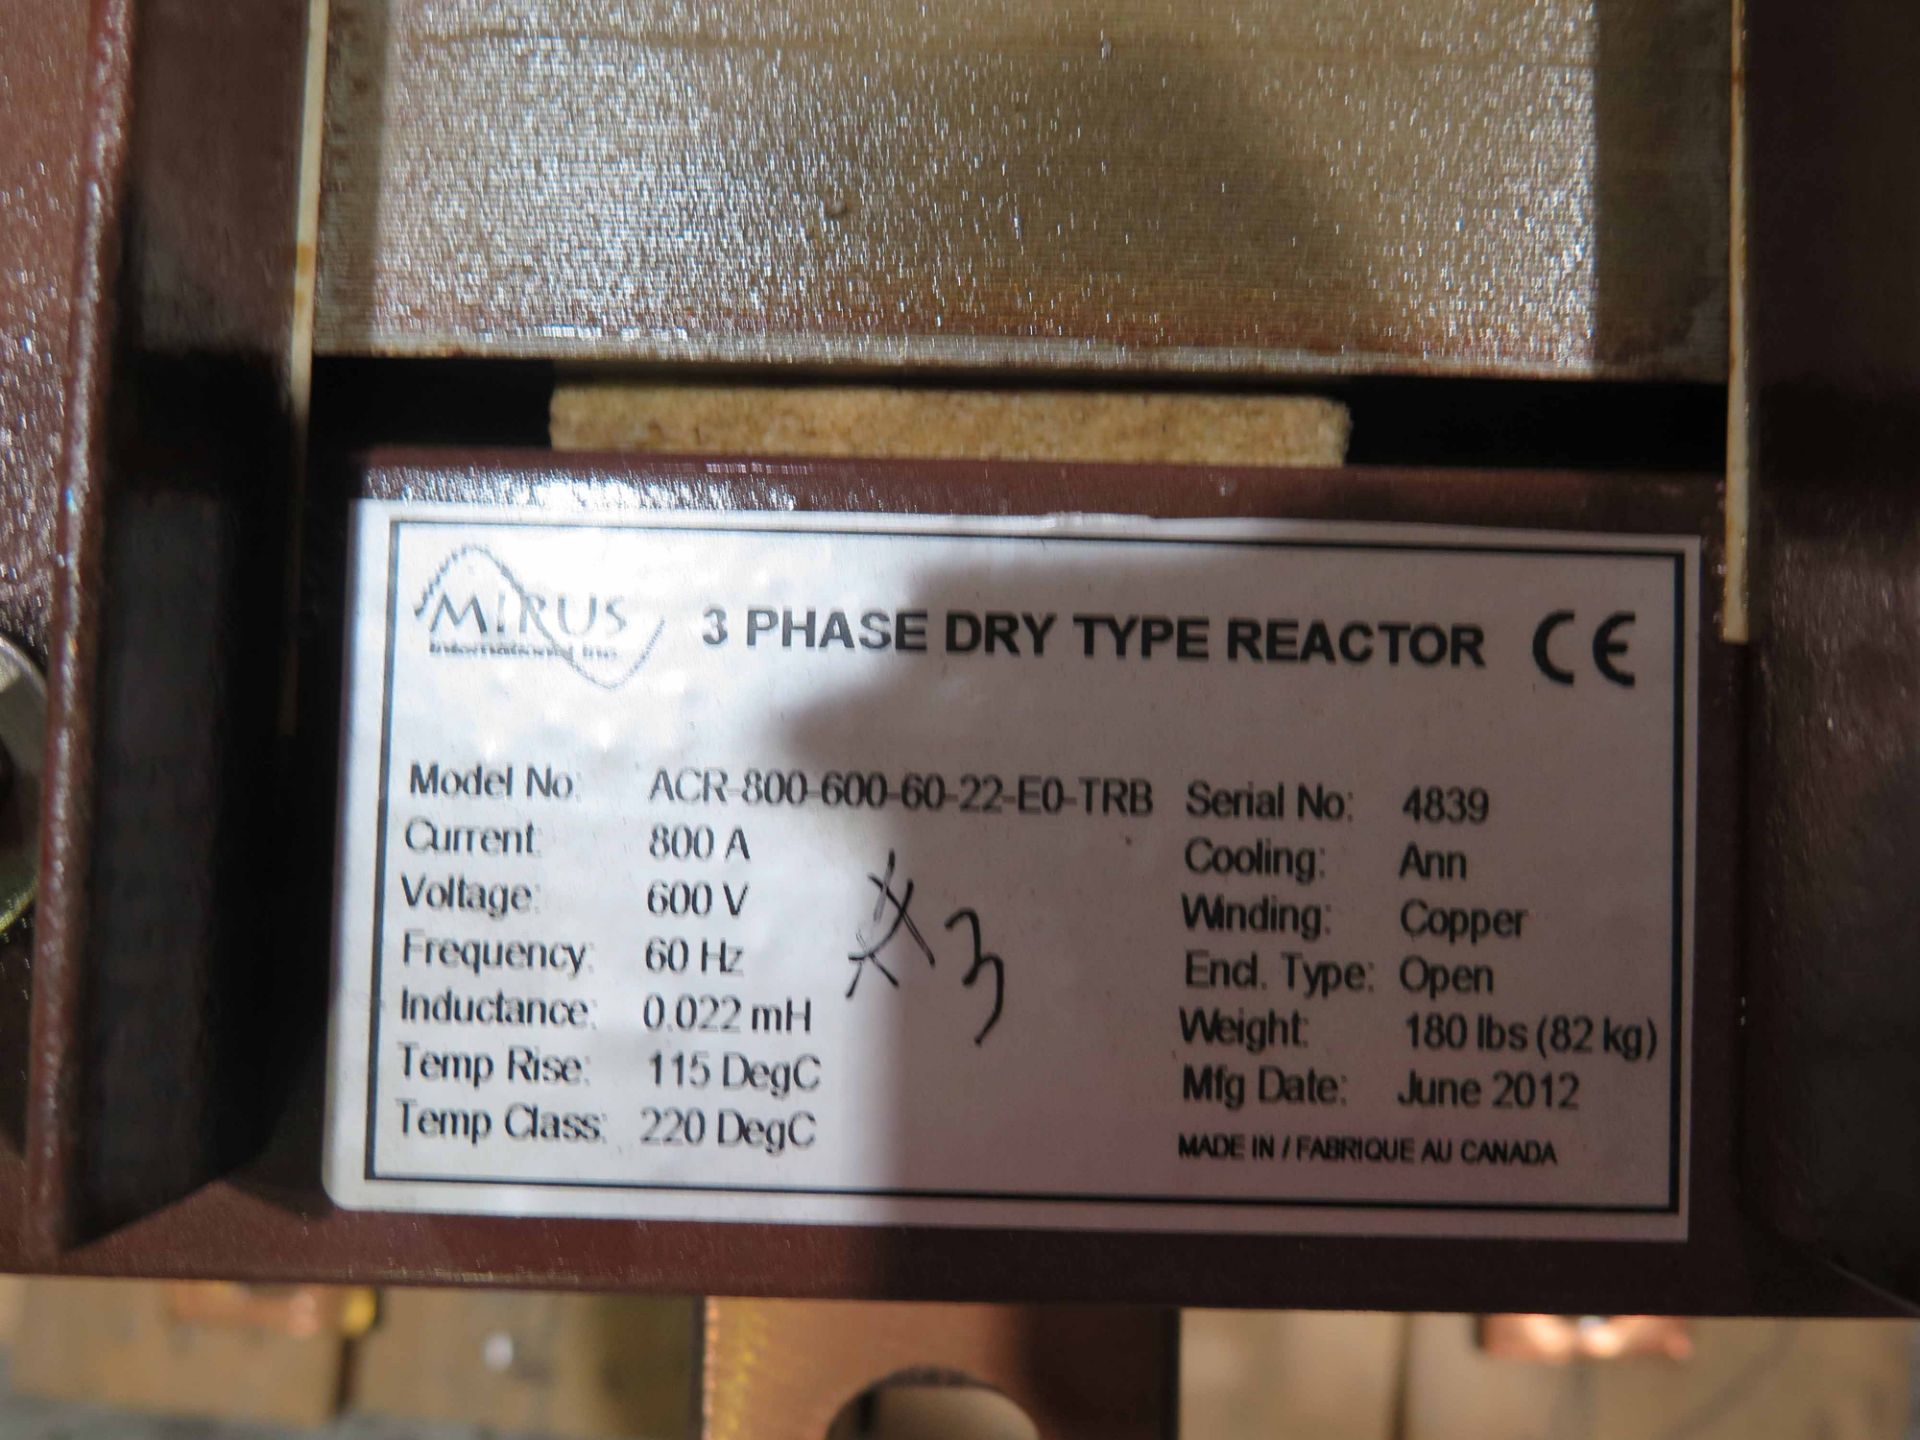 ACR 800 REACTOR, MIRUS, 600 v., 800A, iron core reactor, 575V. - Image 2 of 2